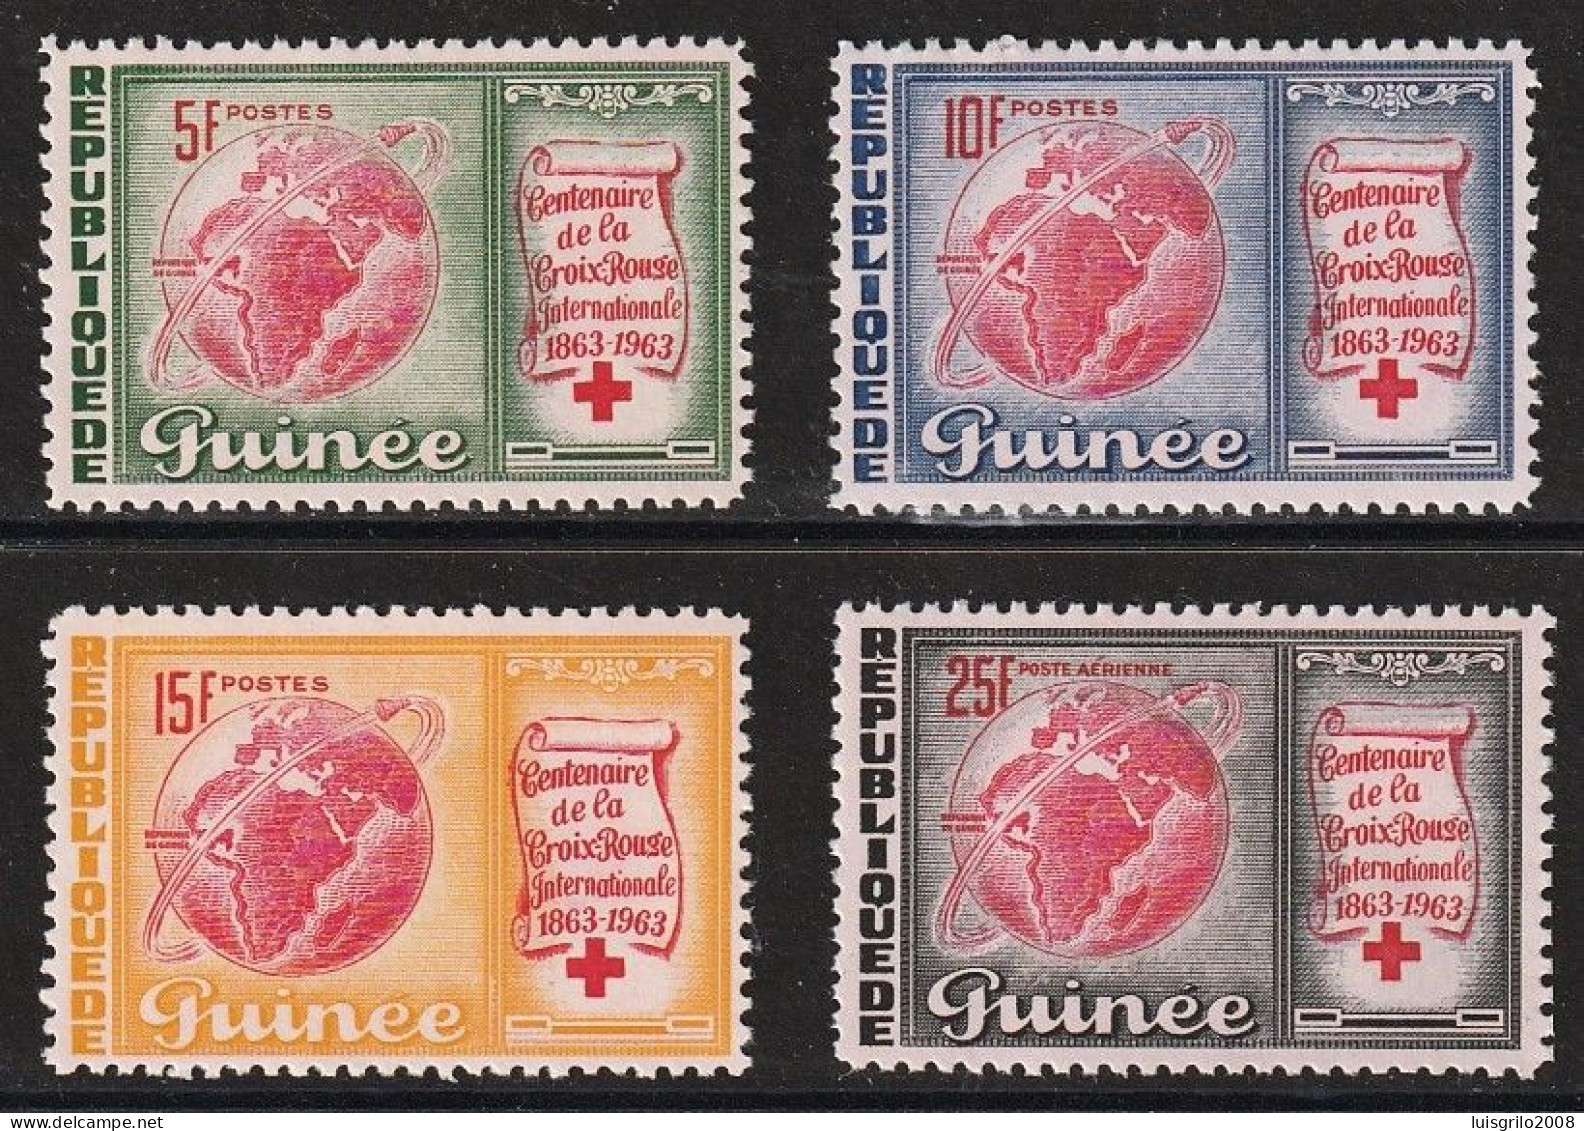 Republique De Guinee 1963 - Red Cross/ Centenaire De La Croix-Rouge -|- Série Compléte - MNH - Rotes Kreuz